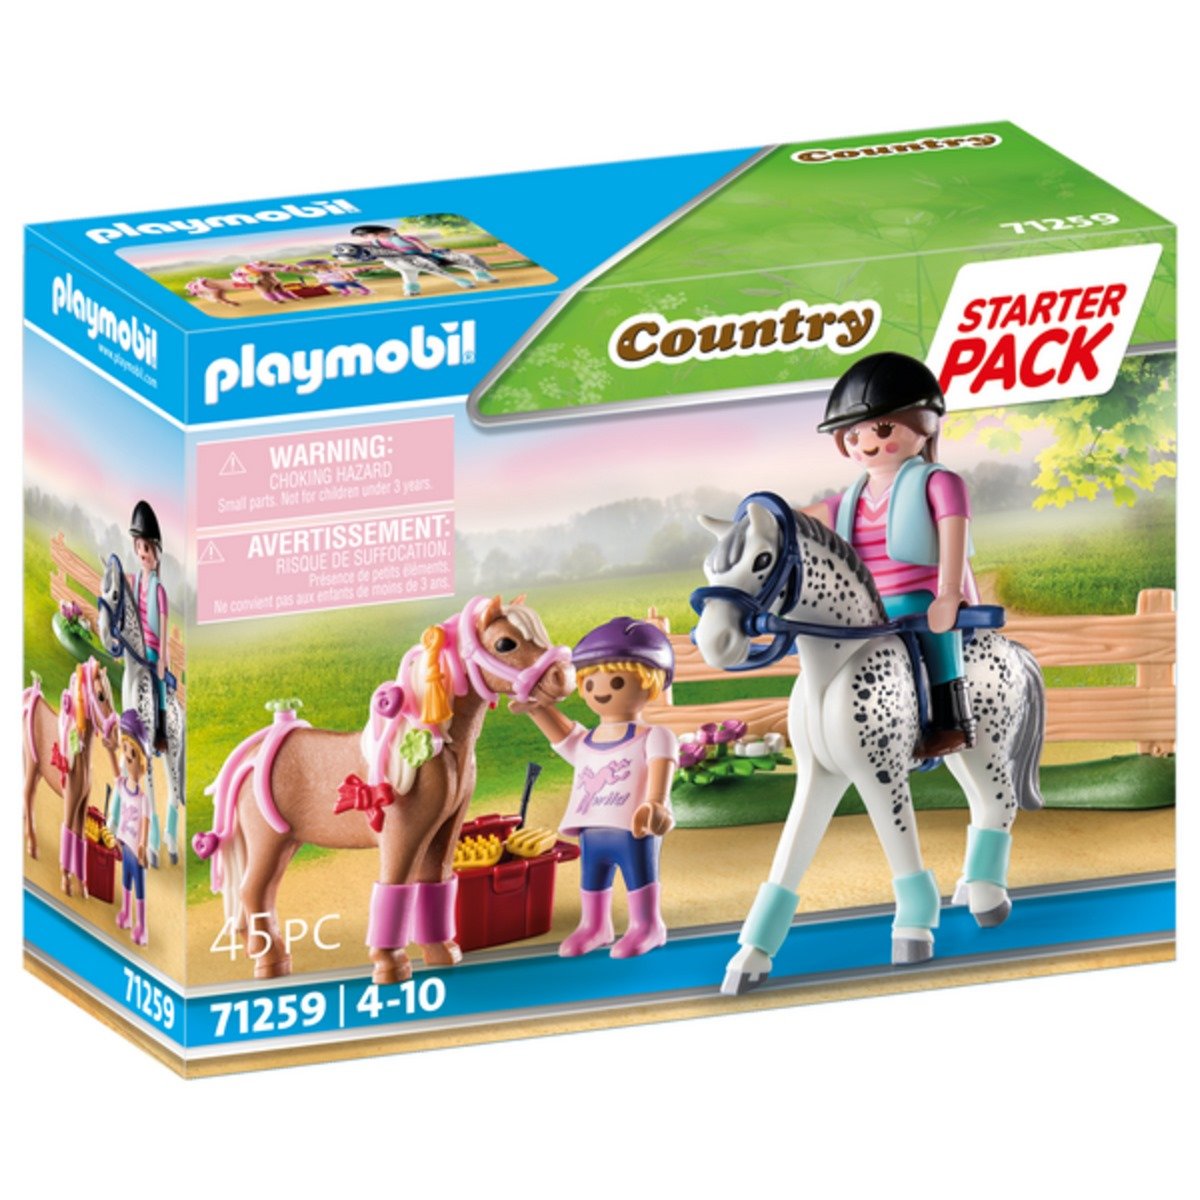 Voiture et van pour poney Playmobil Country 70511 - La Grande Récré